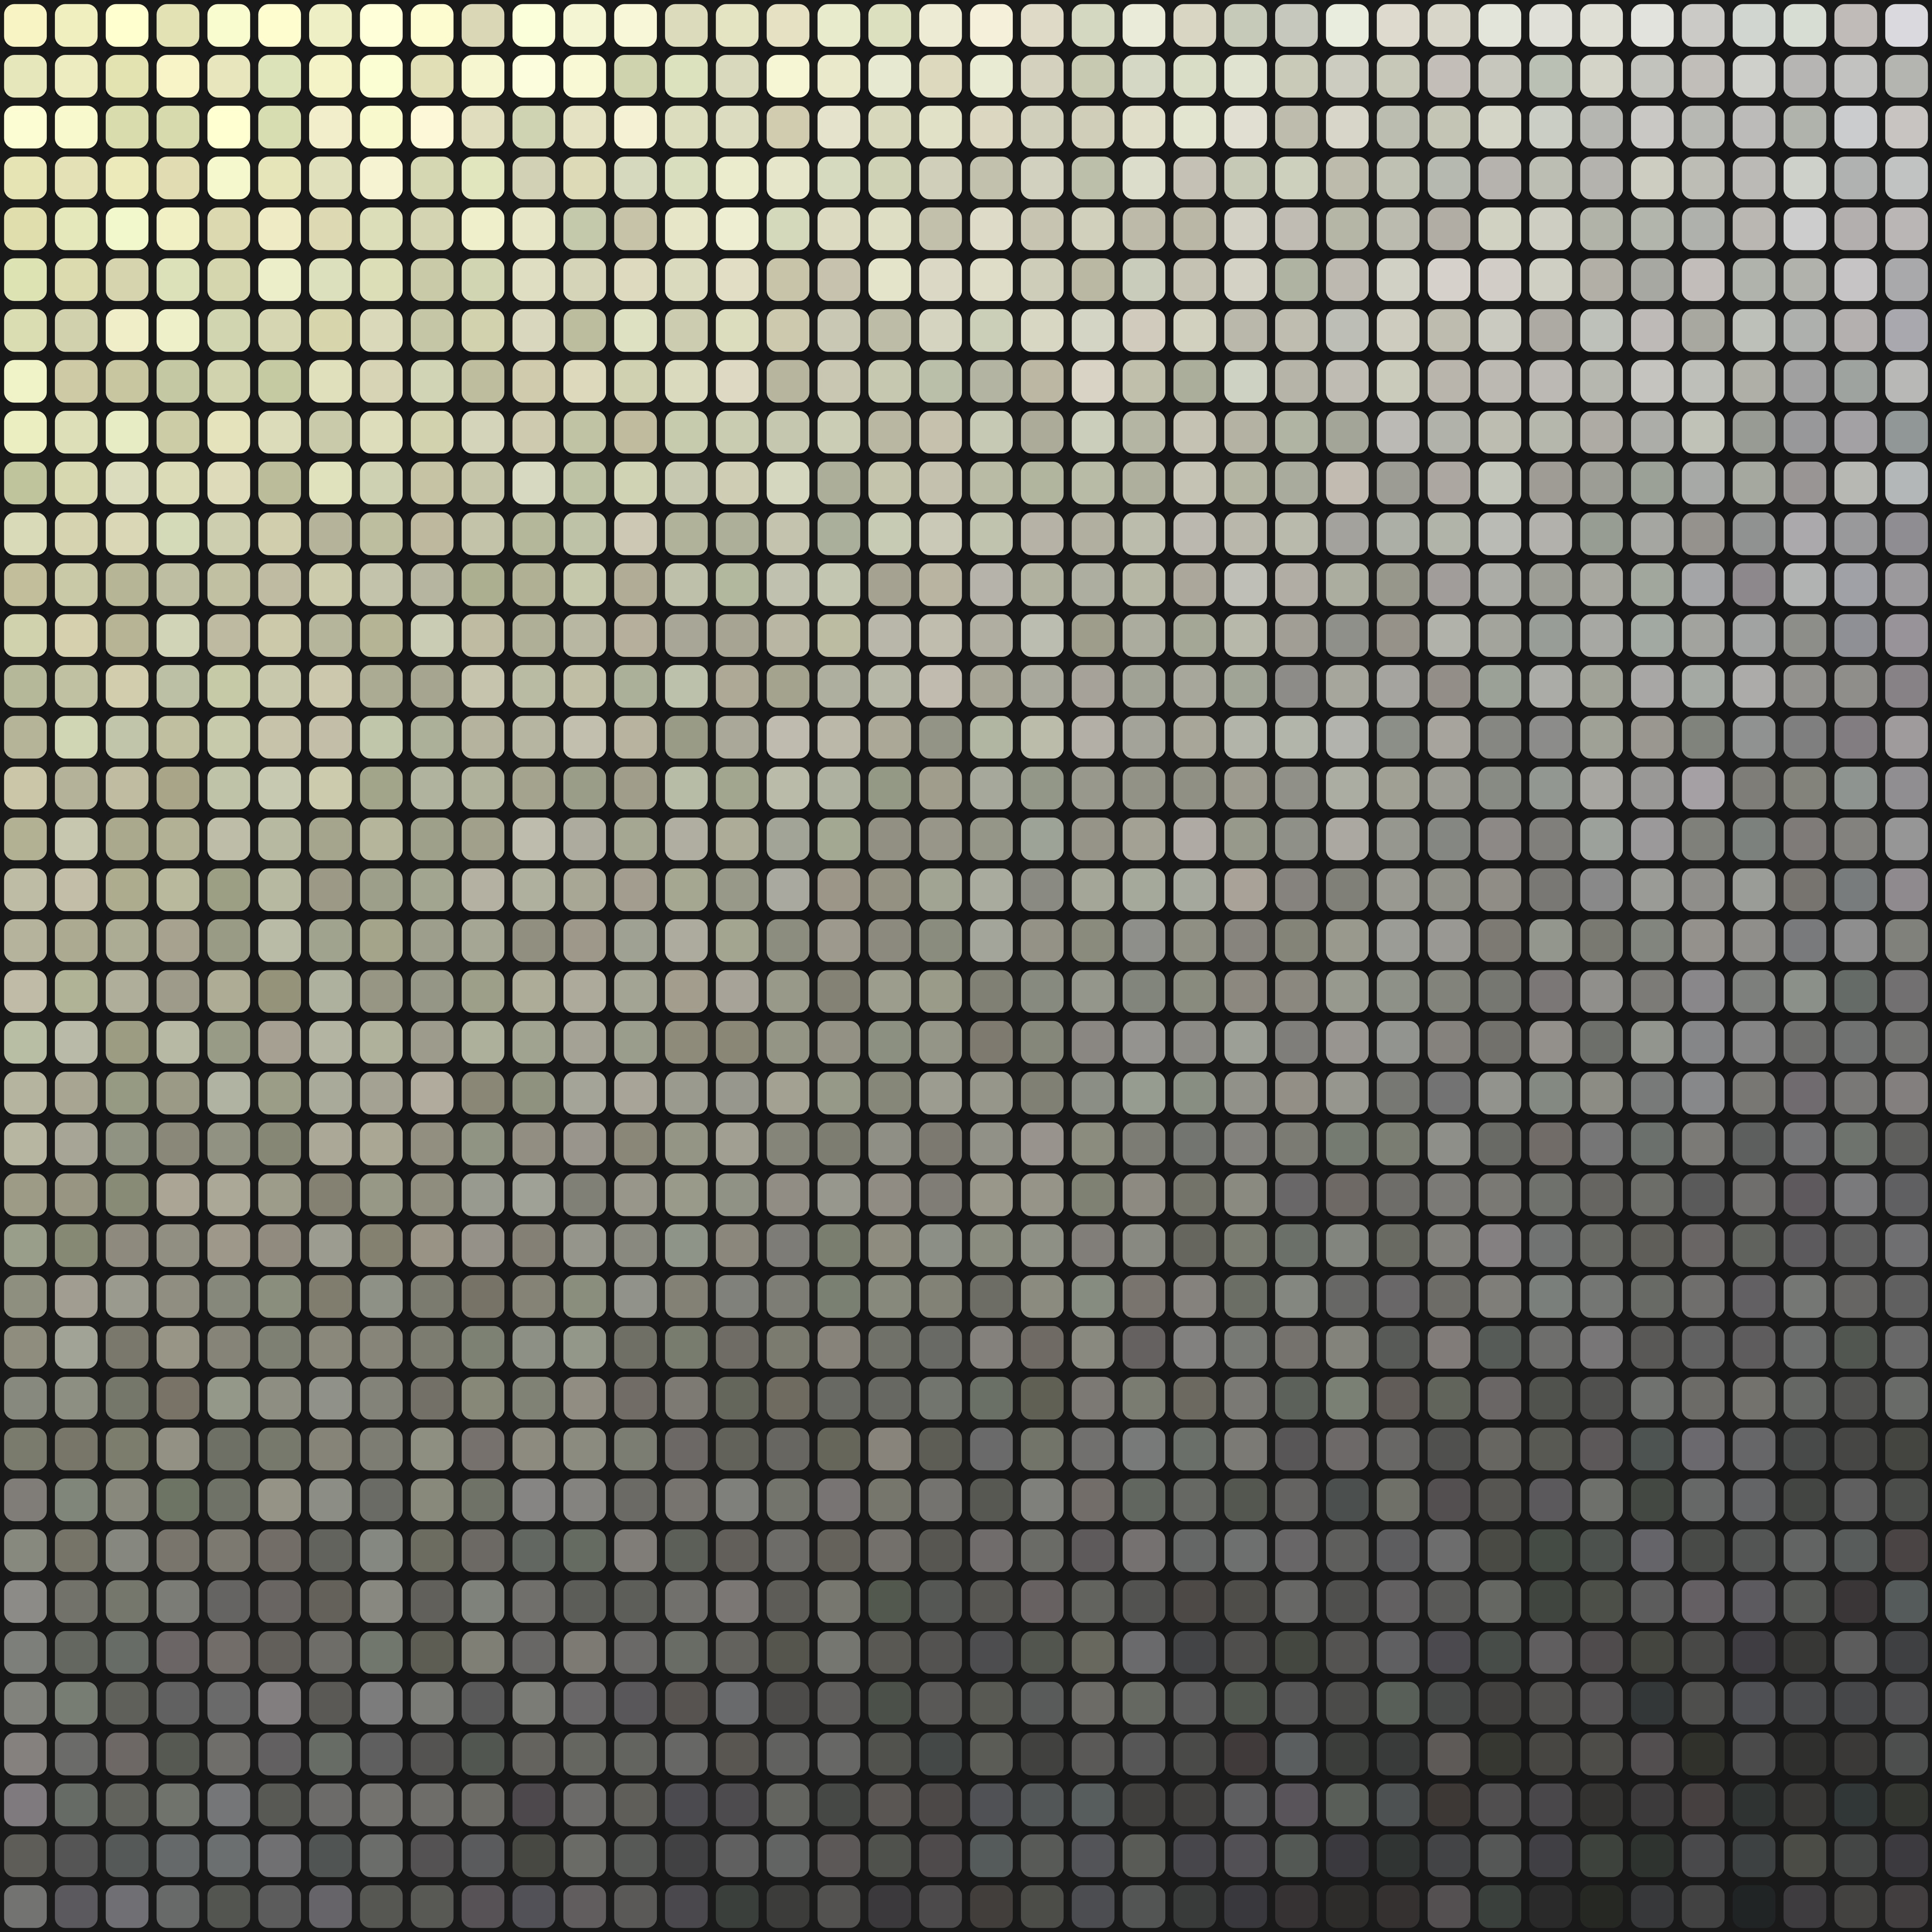 texture, pixels, mosaic, textures, bw, chb, monochrome, gradient